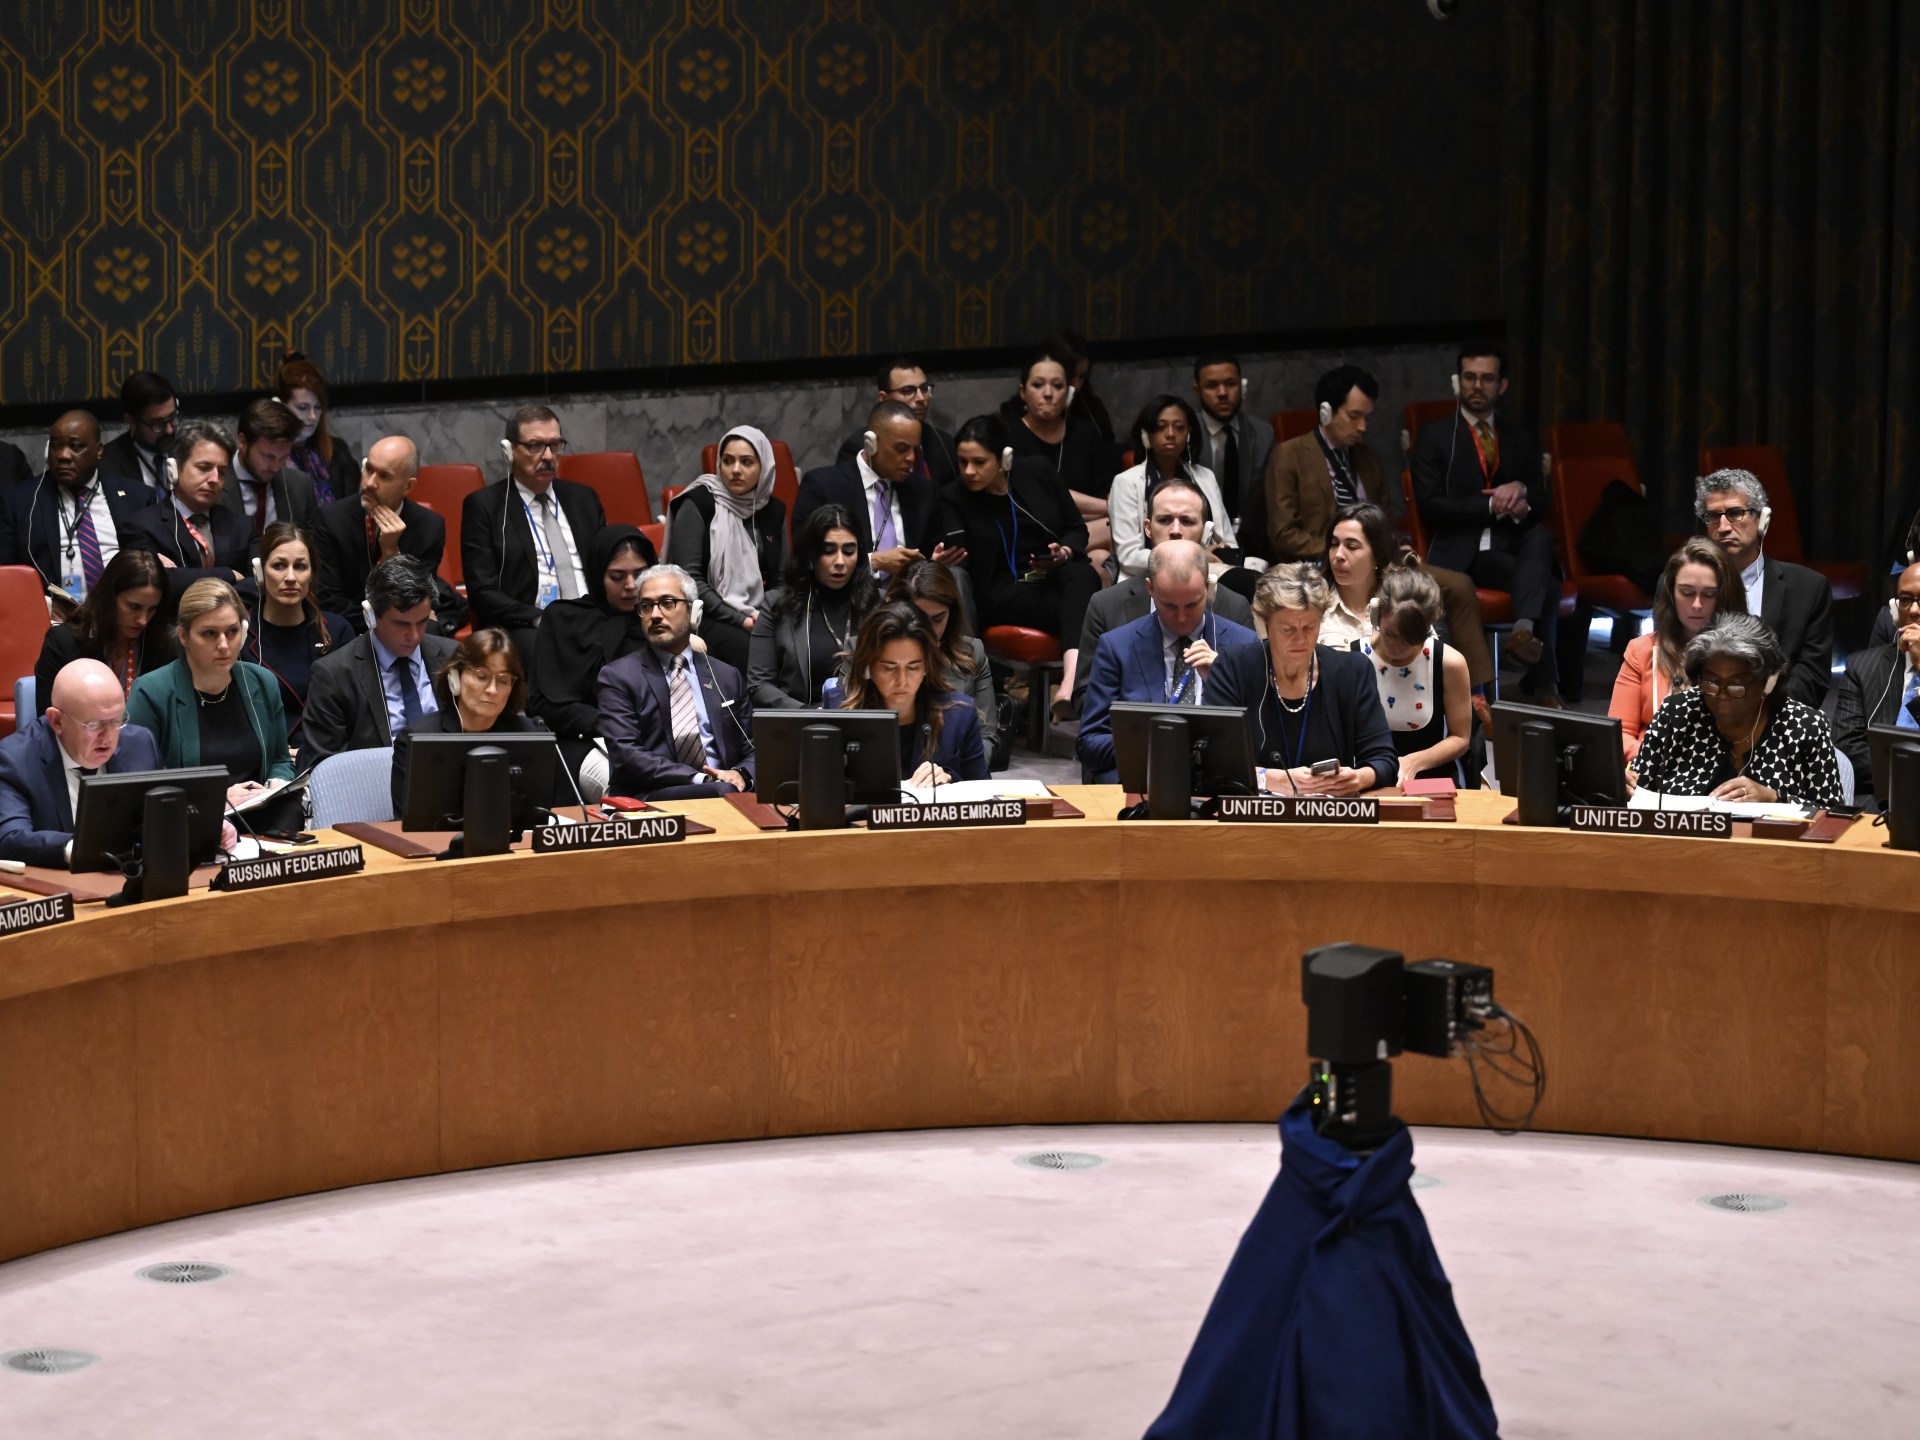 مجلس الأمن يصوت على مشروعي قرارين أميركي وروسي بشأن غزة | أخبار – البوكس نيوز